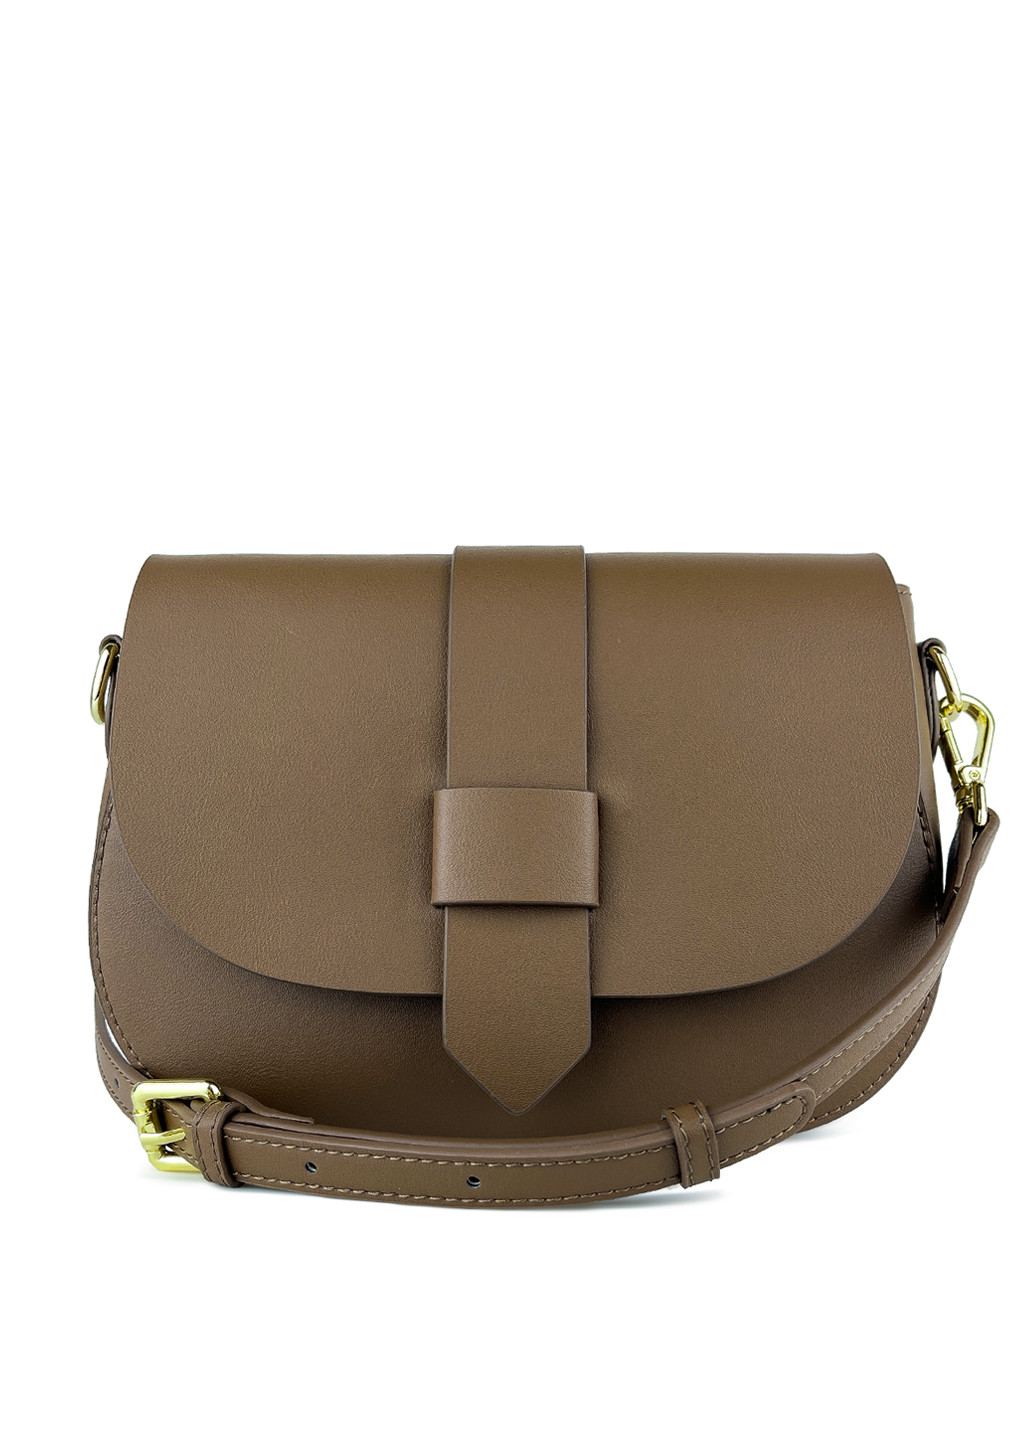 Женская сумка через плечо кросс-боди темно-бежевая кожаная маленькая Fashion (251385046)